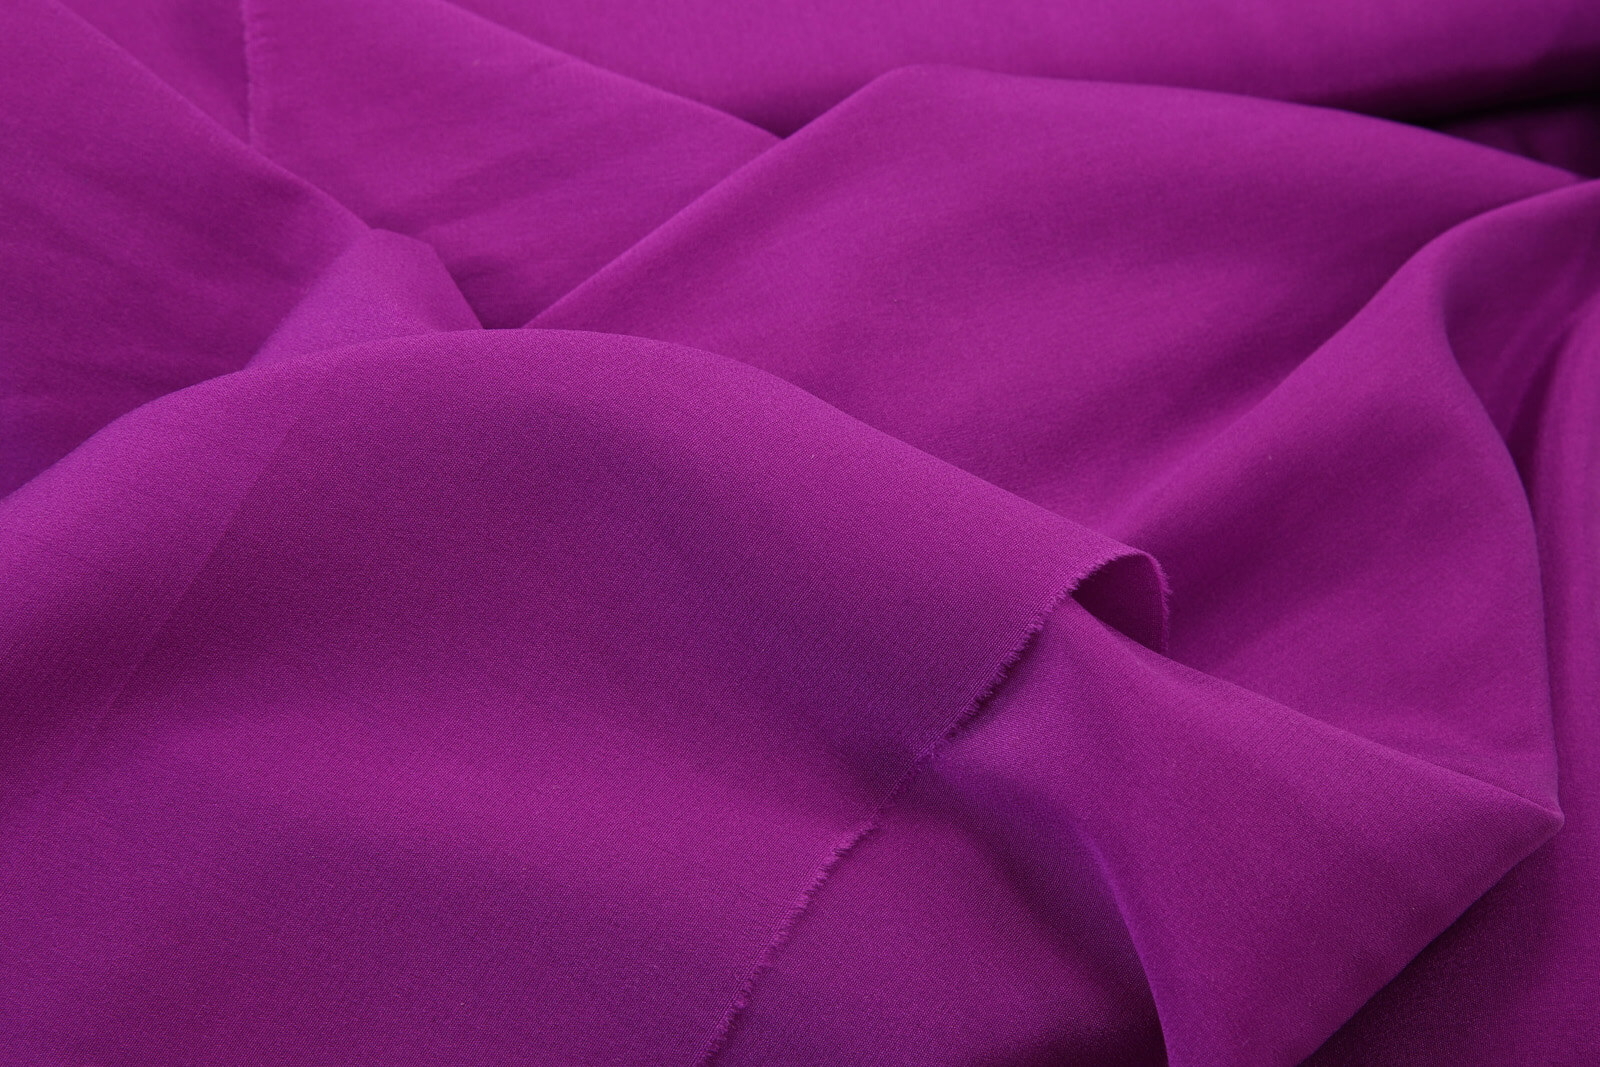 Шелковый крепдешин Nina Ricci, цвет Фиолетовый, фото 1